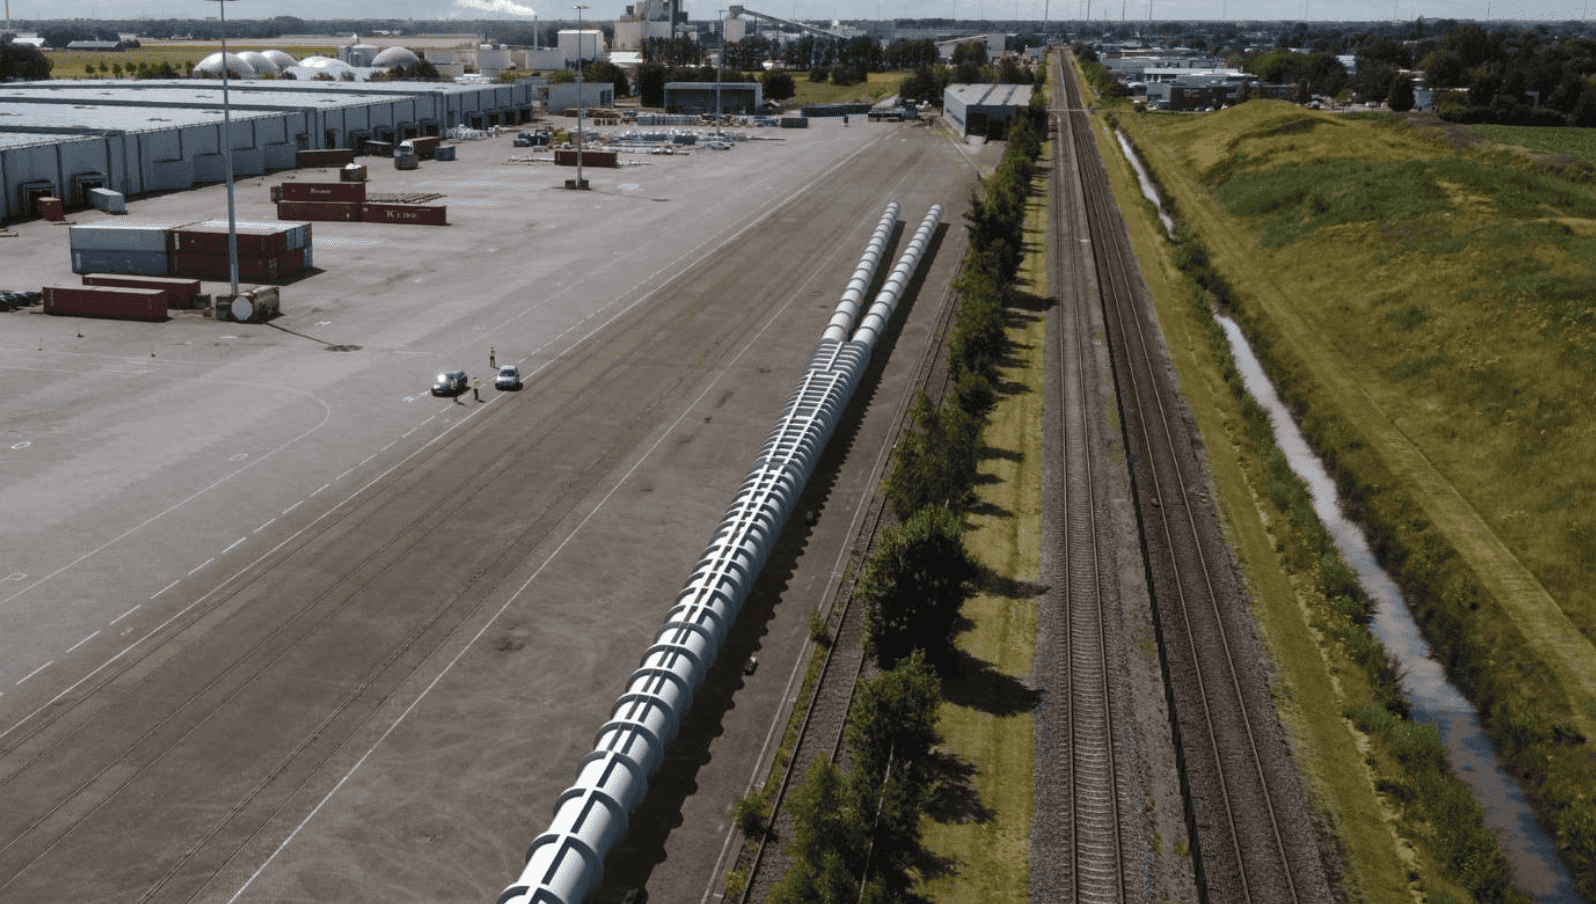 Das European Hyperloop Center, das in Veendam, Niederlande, gebaut wird, soll zum "Eckpfeiler der Hyperloop-Innovation" werden